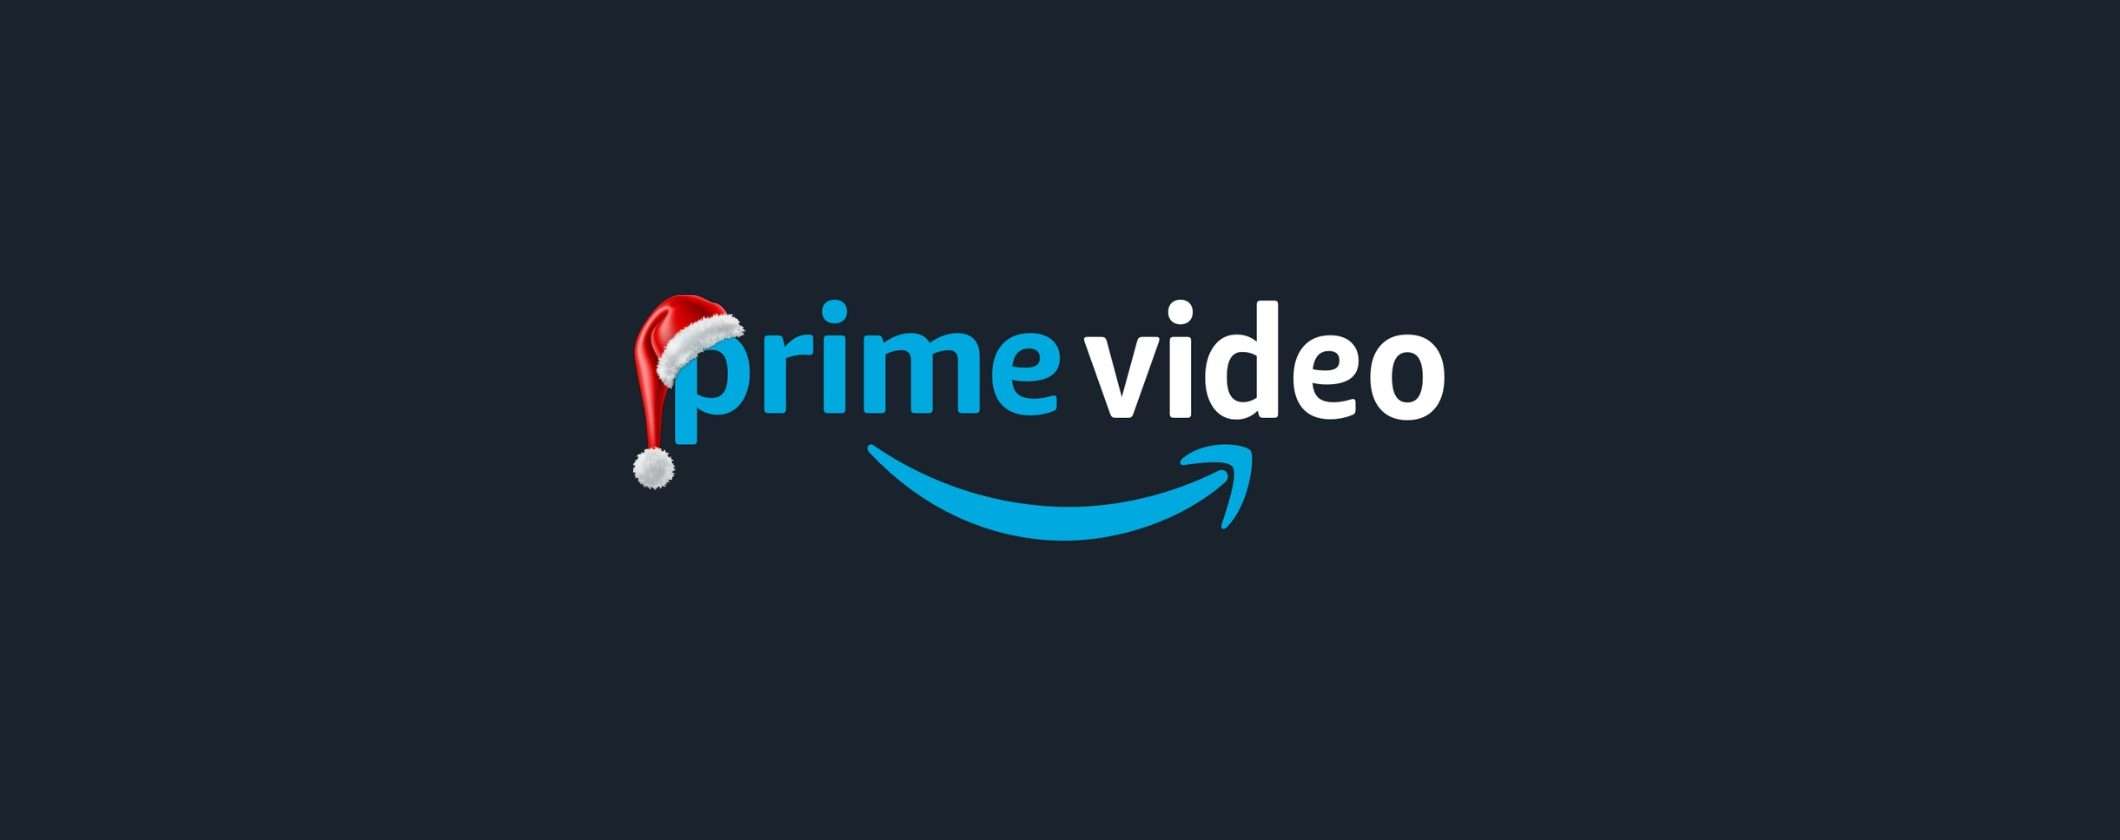 Prime Video gratis? È l'offerta di Natale Amazon!